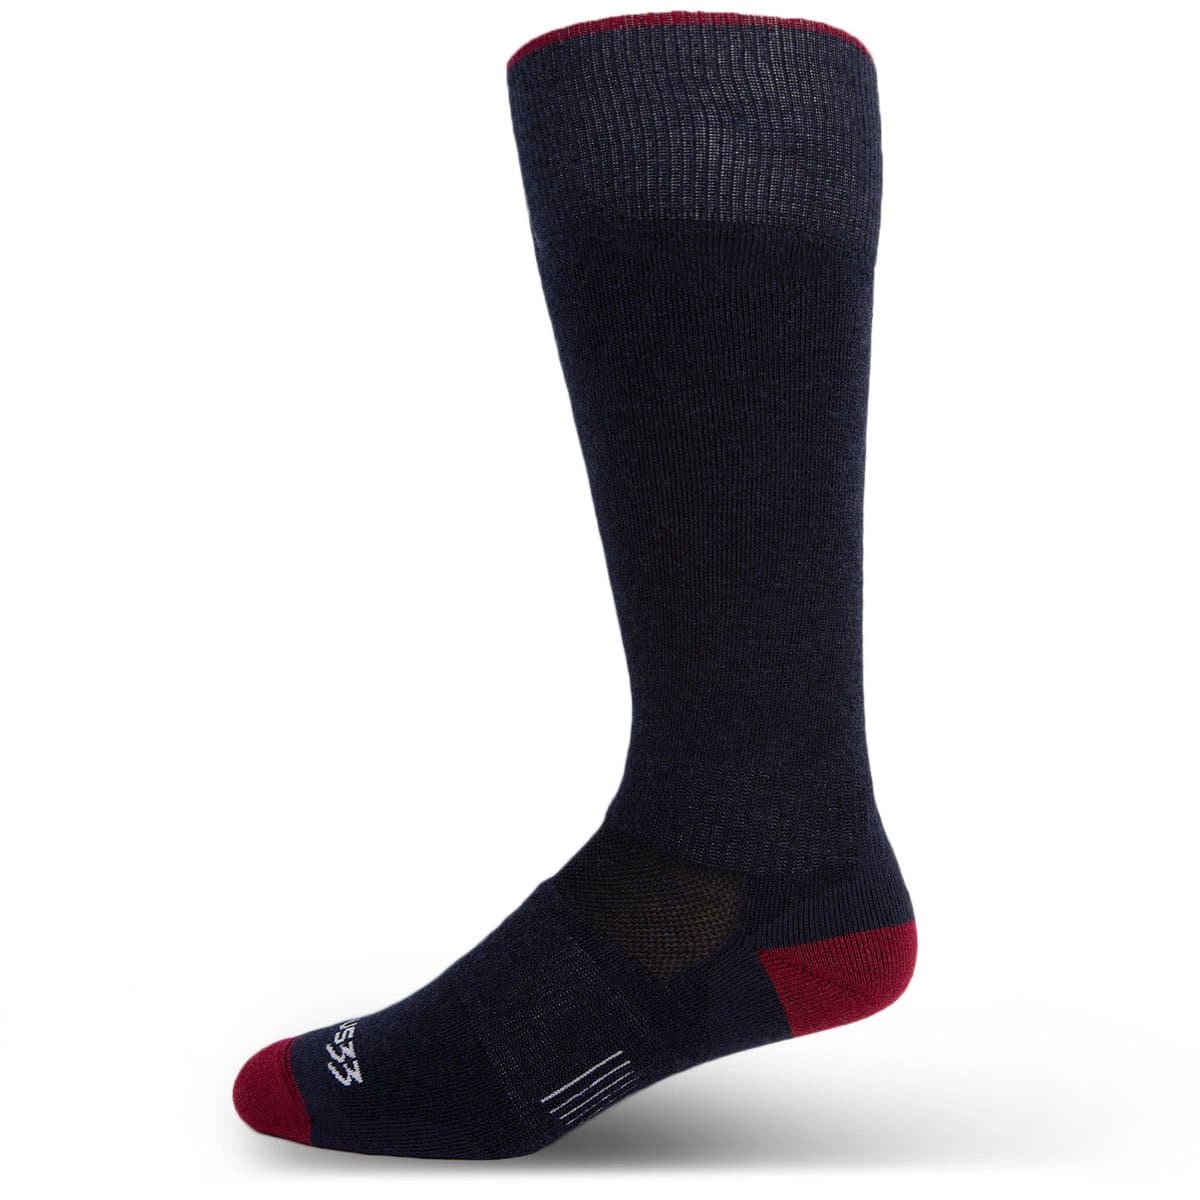 All Season - Ankle Wool Socks Mountain Heritage – Minus33 Merino